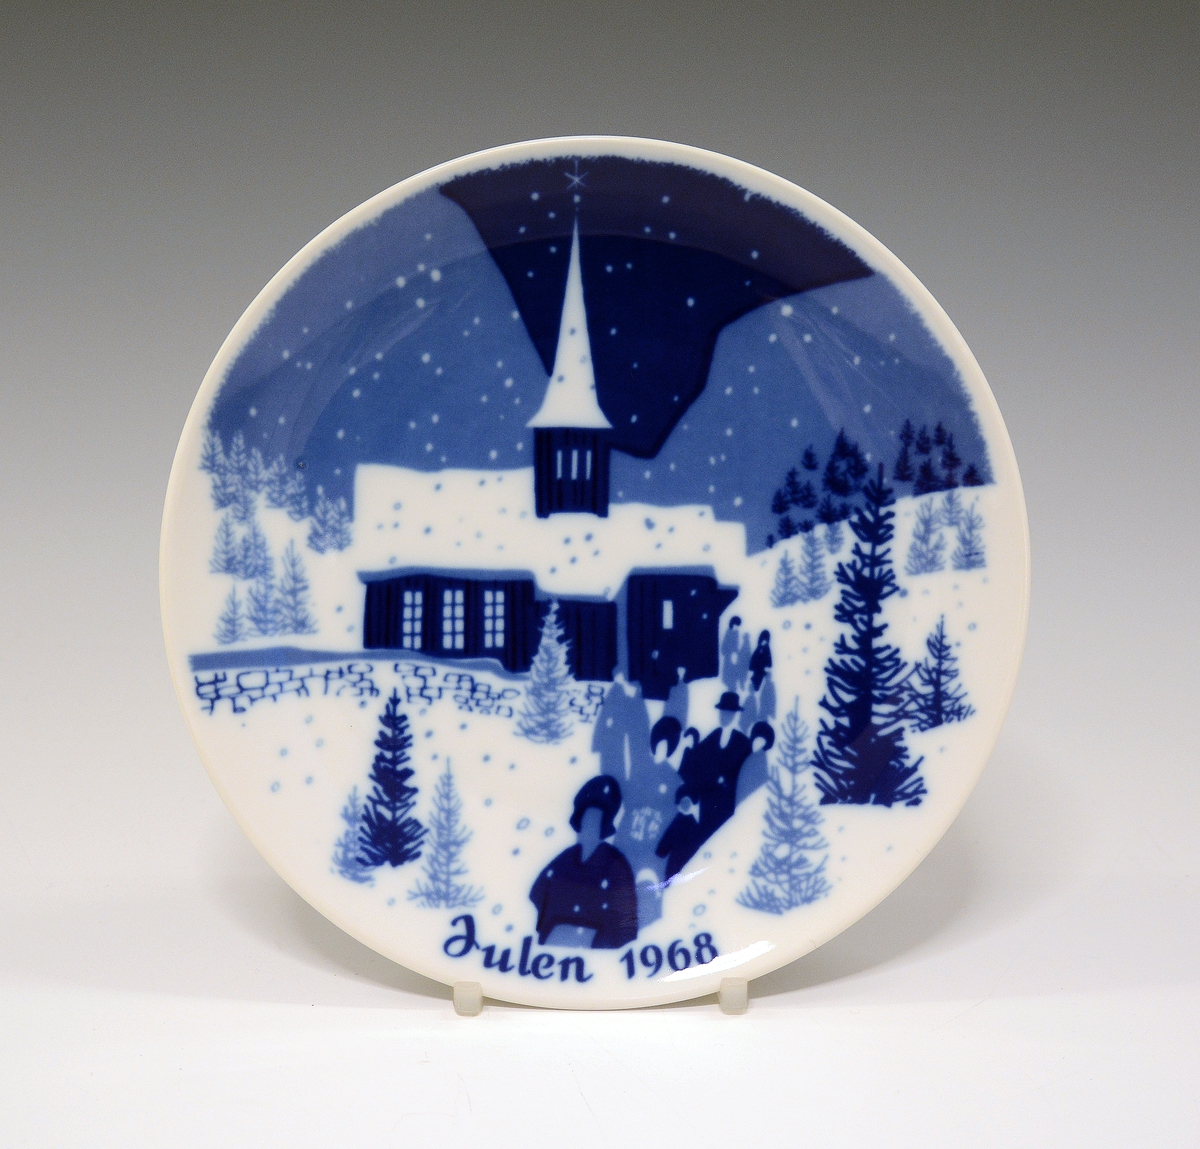 Juleplatte av porselen. Glatt modell. Hvit glasur. Dekorert med kirke og tekst Julen 1968 i ulike blåfarger.
Dekor av Gunnar Bratlie.